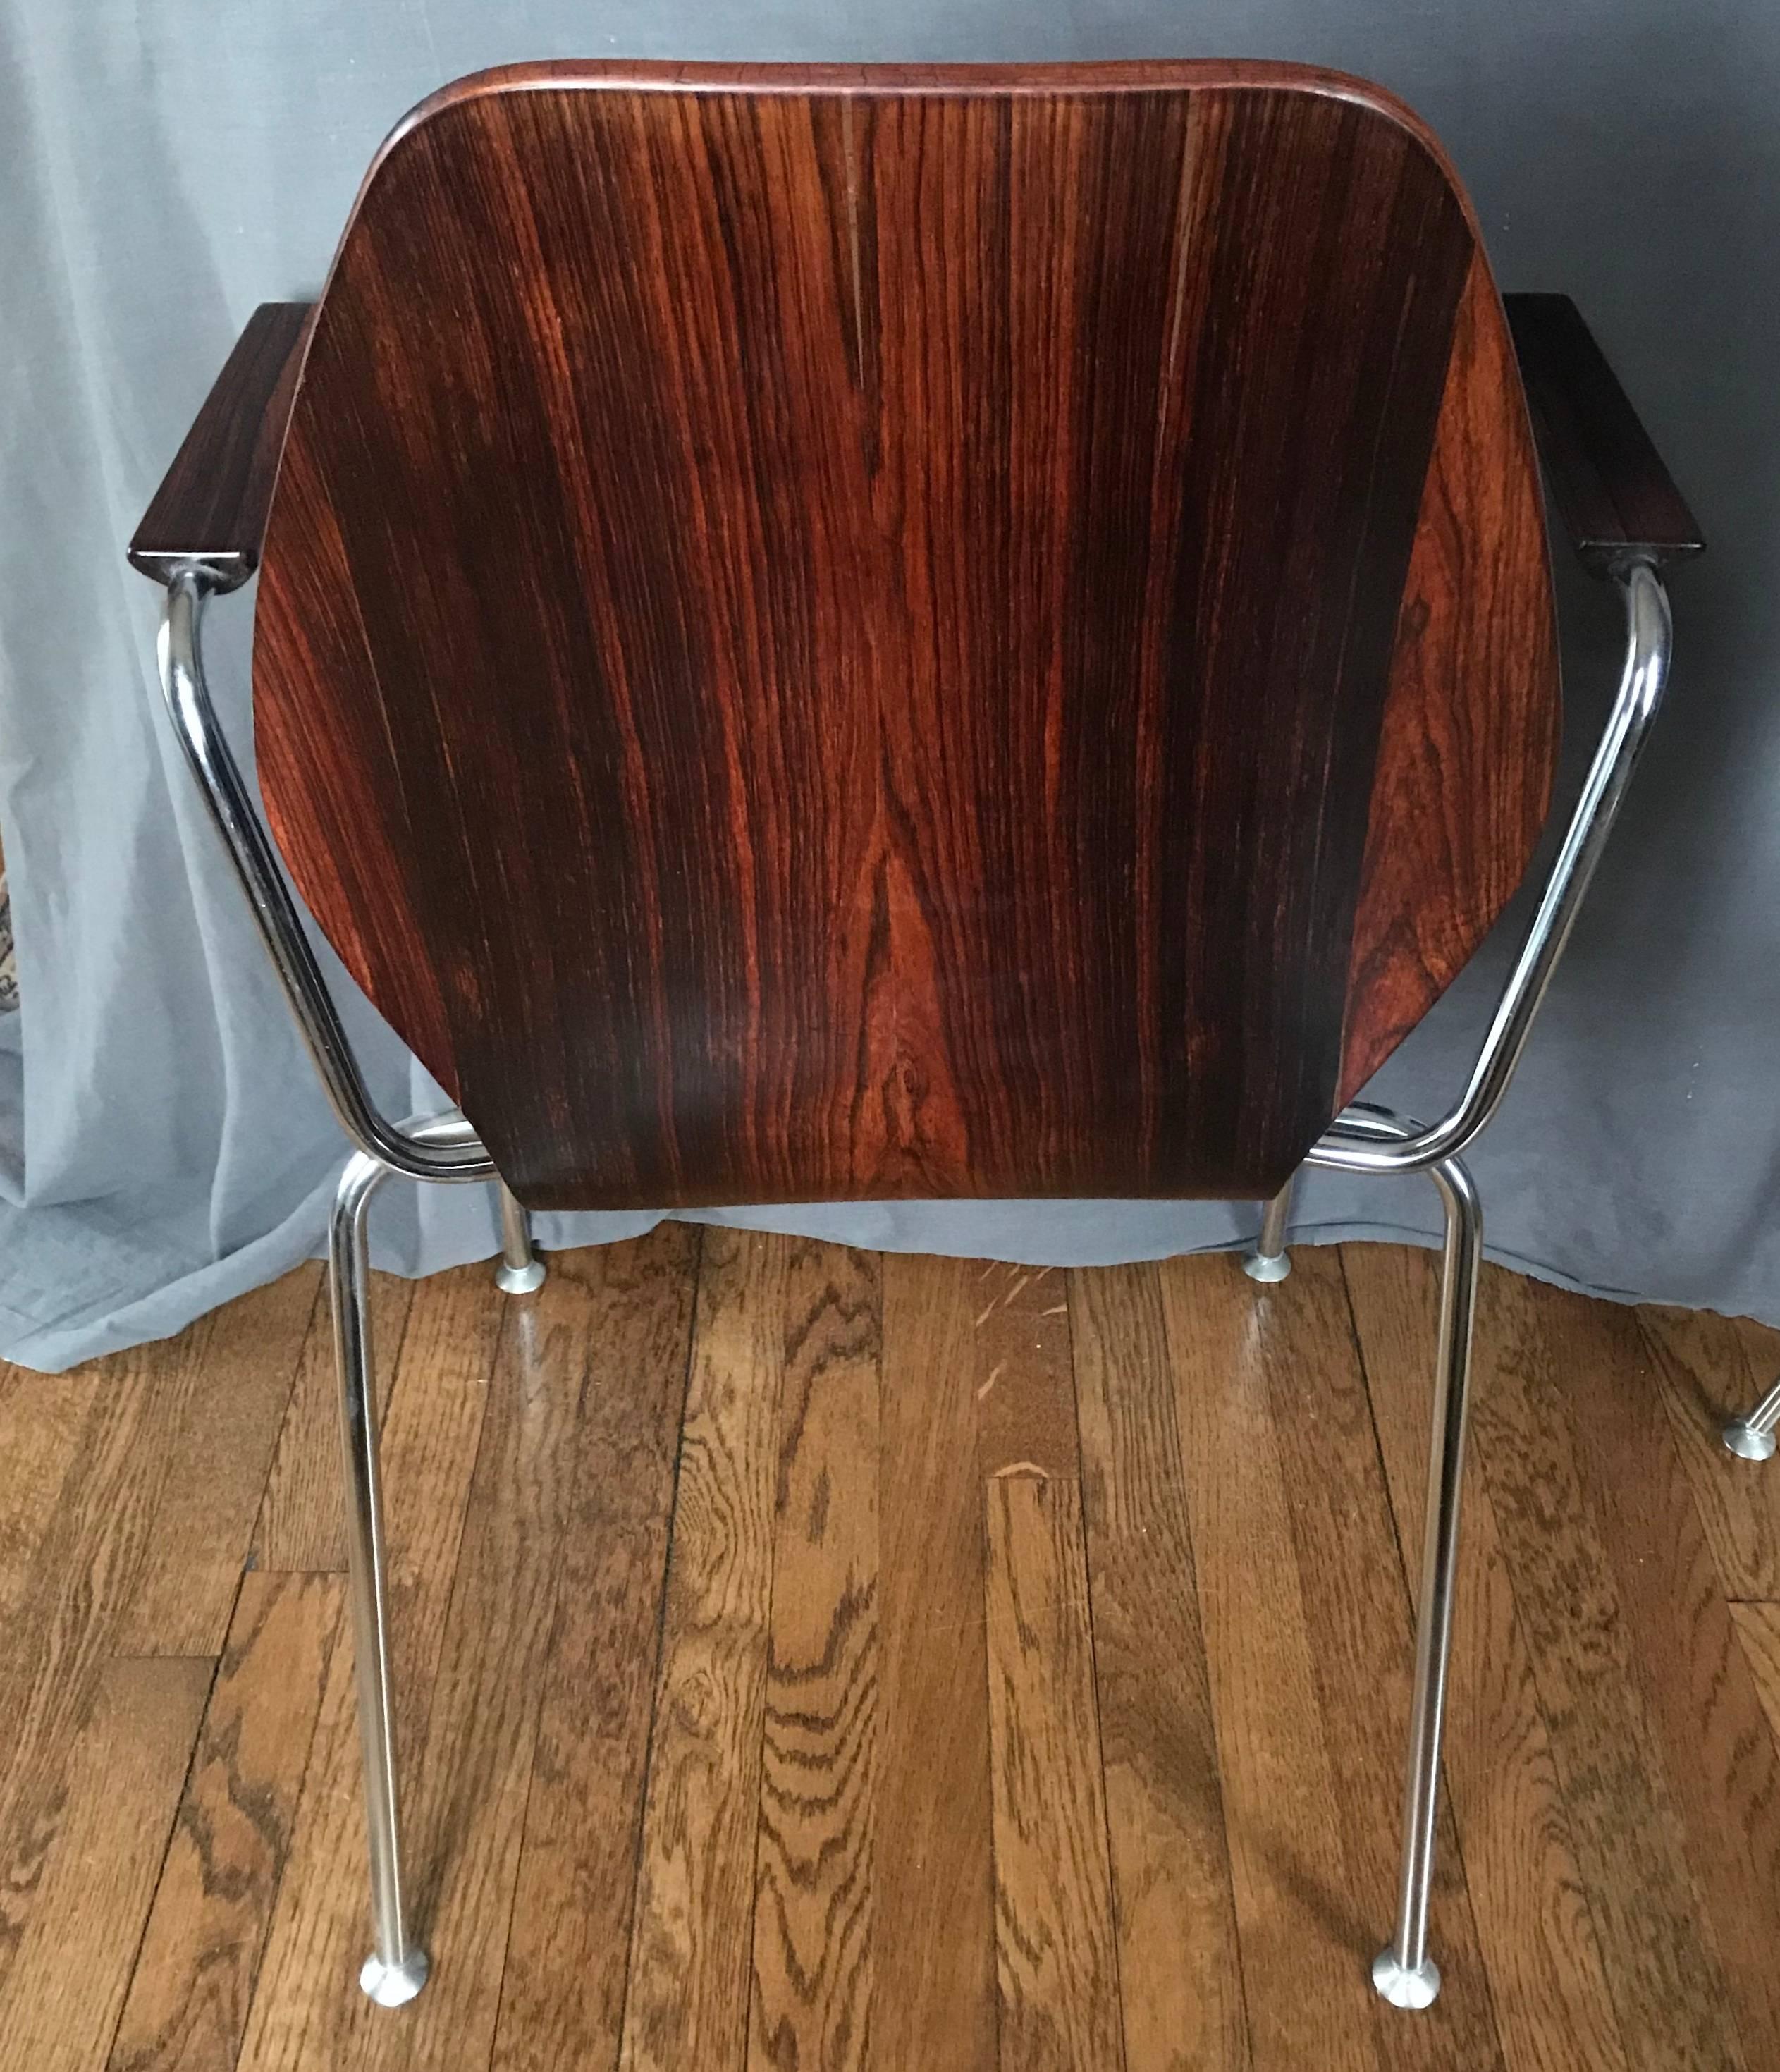 Midcentury Danish Rosewood Chair (Chrom)